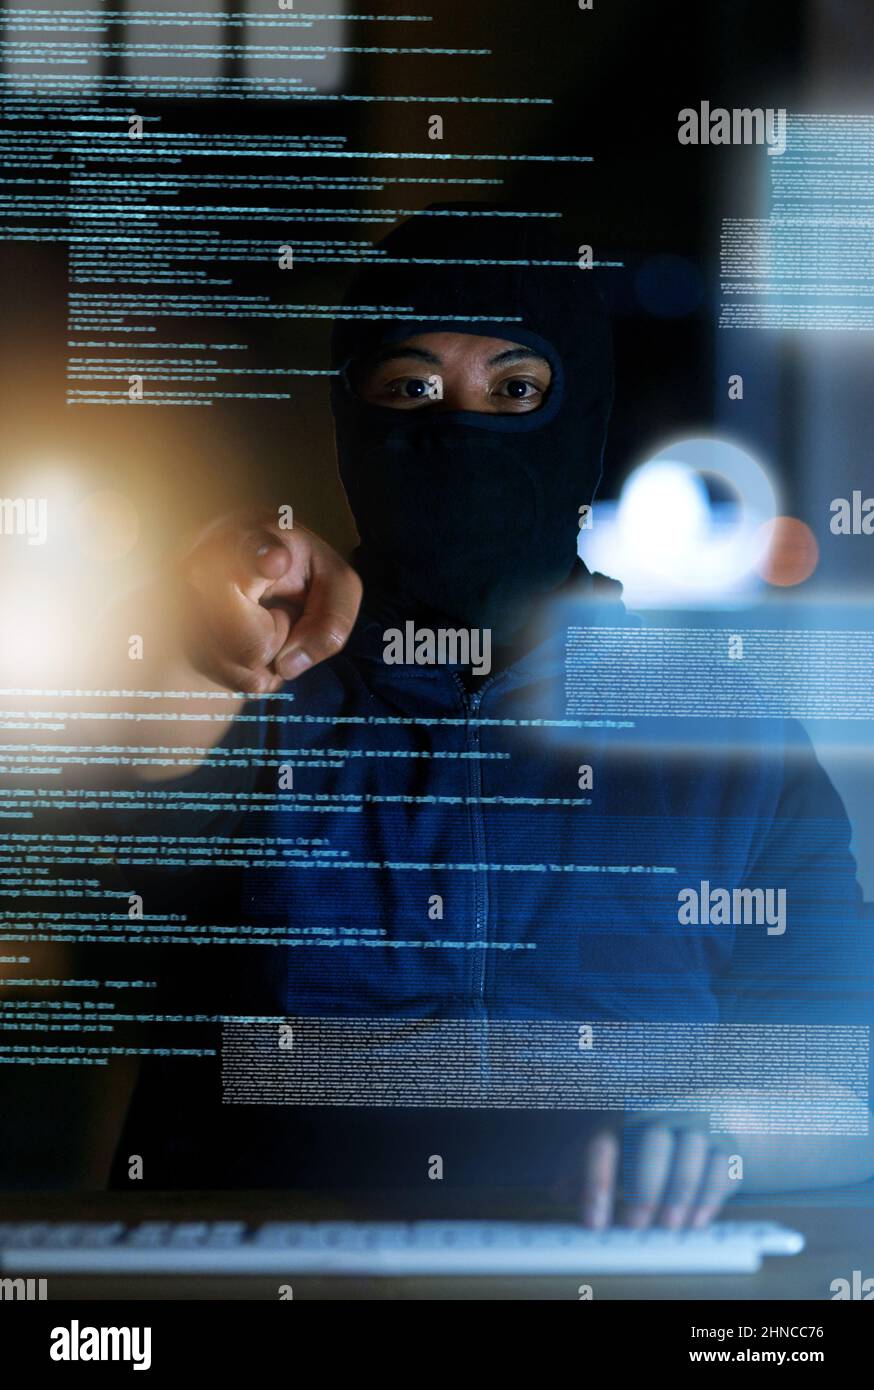 Vous ne savez jamais qui vous regarde en ligne. Photo d'un pirate craquant un code informatique dans l'obscurité. Banque D'Images